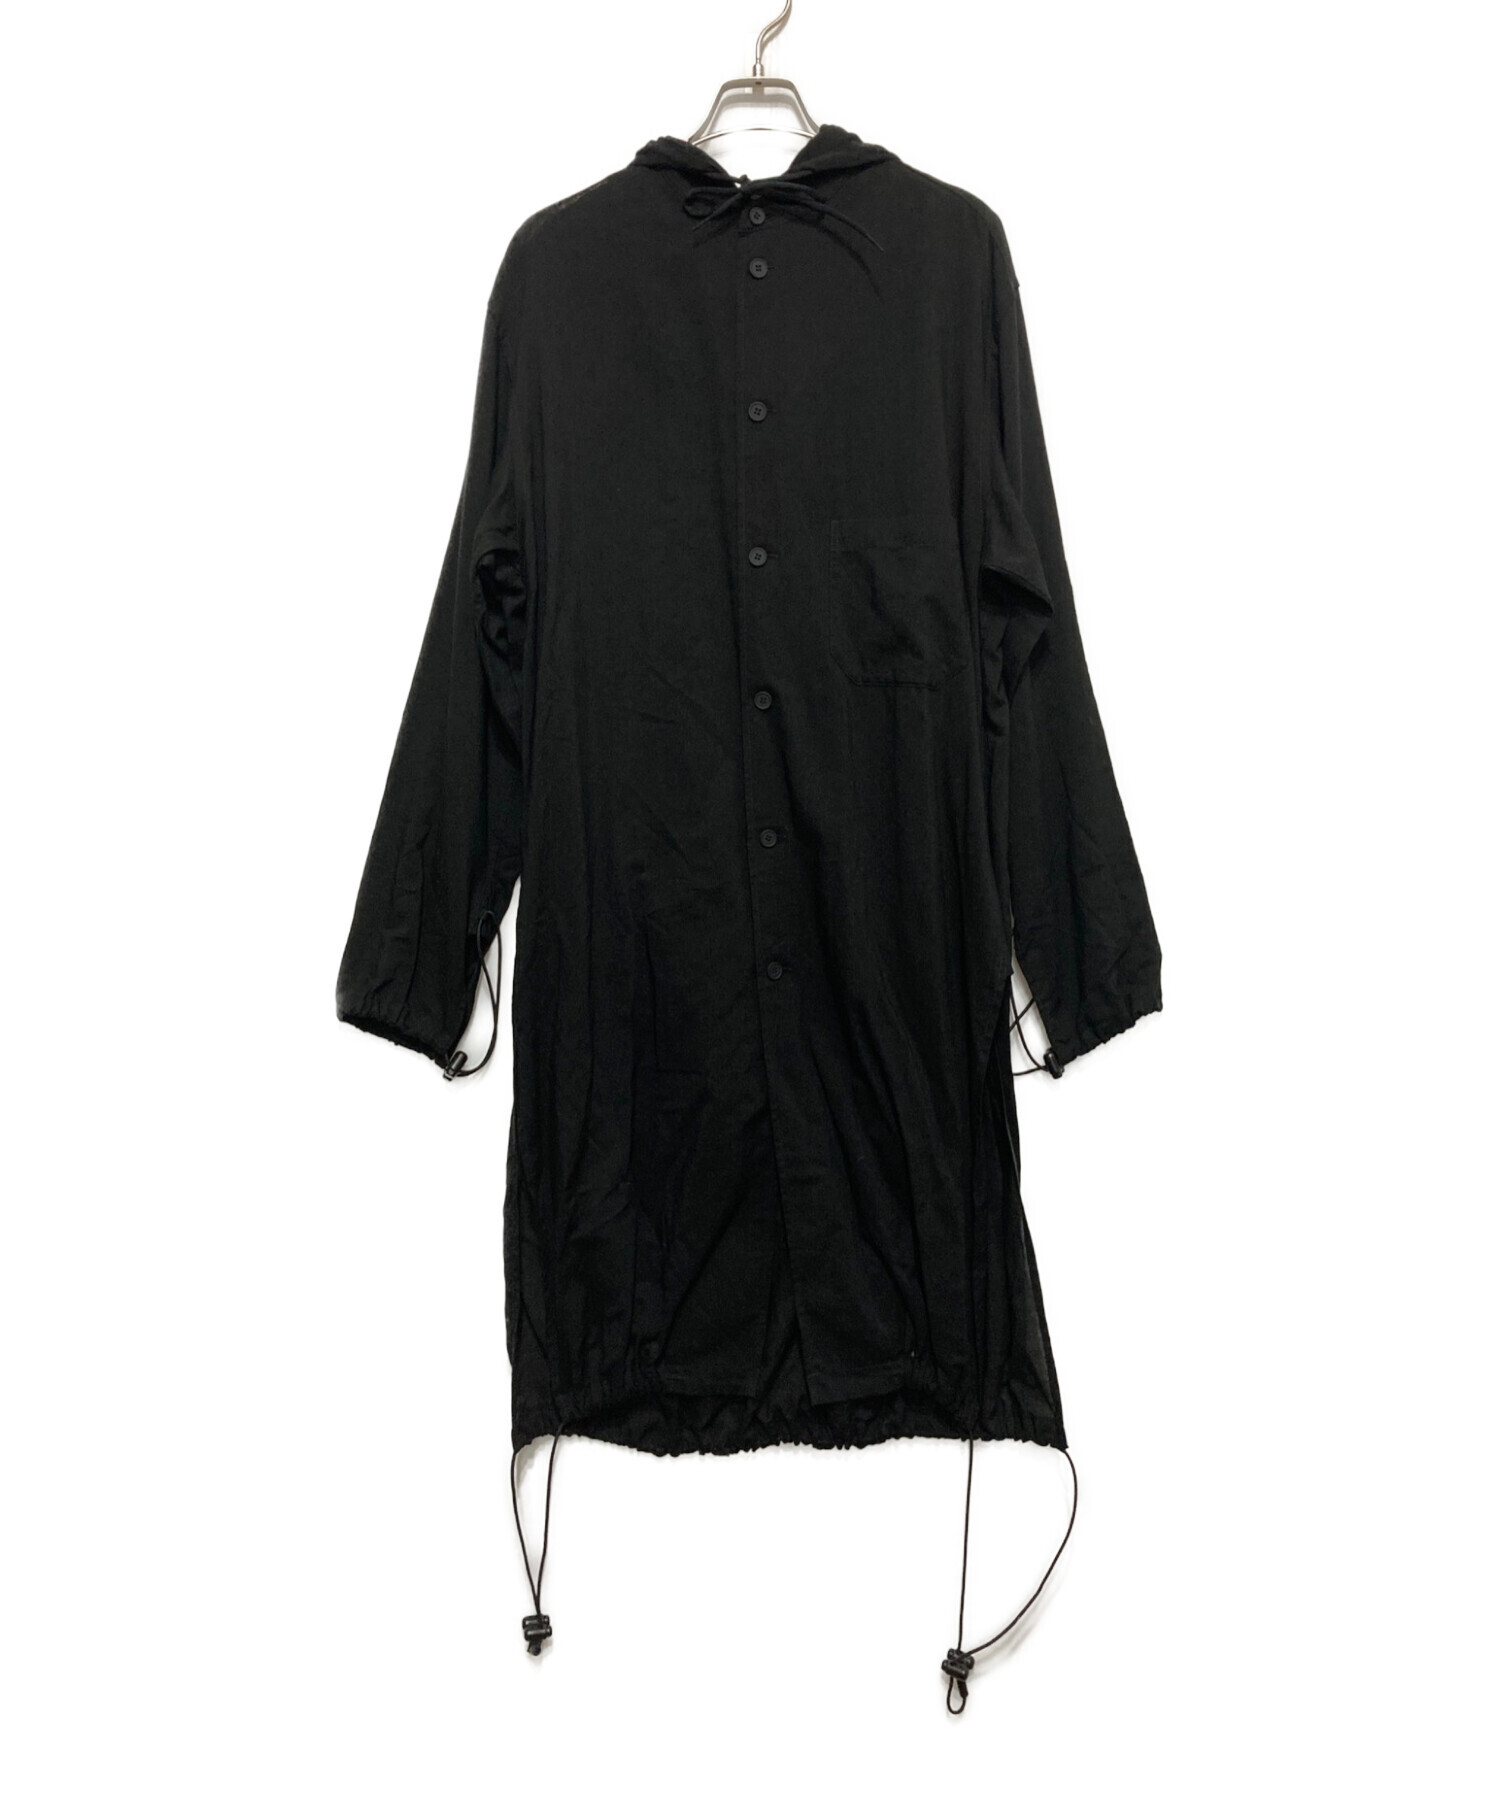 Y-3 (ワイスリー) フーデットロングシャツ ブラック サイズ:XS